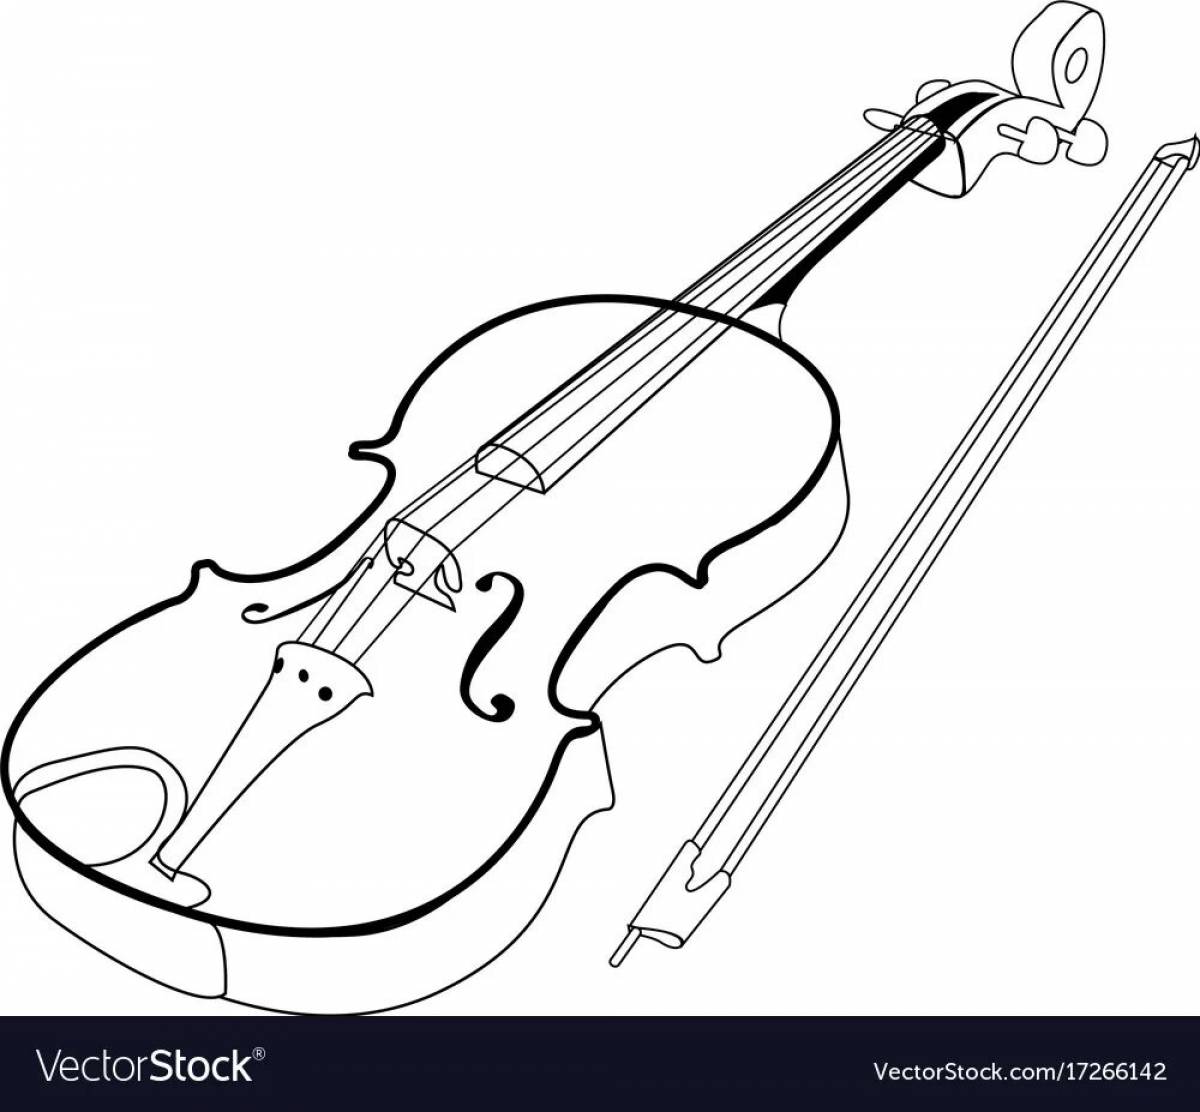 Удивительная страница раскраски скрипки для студентов